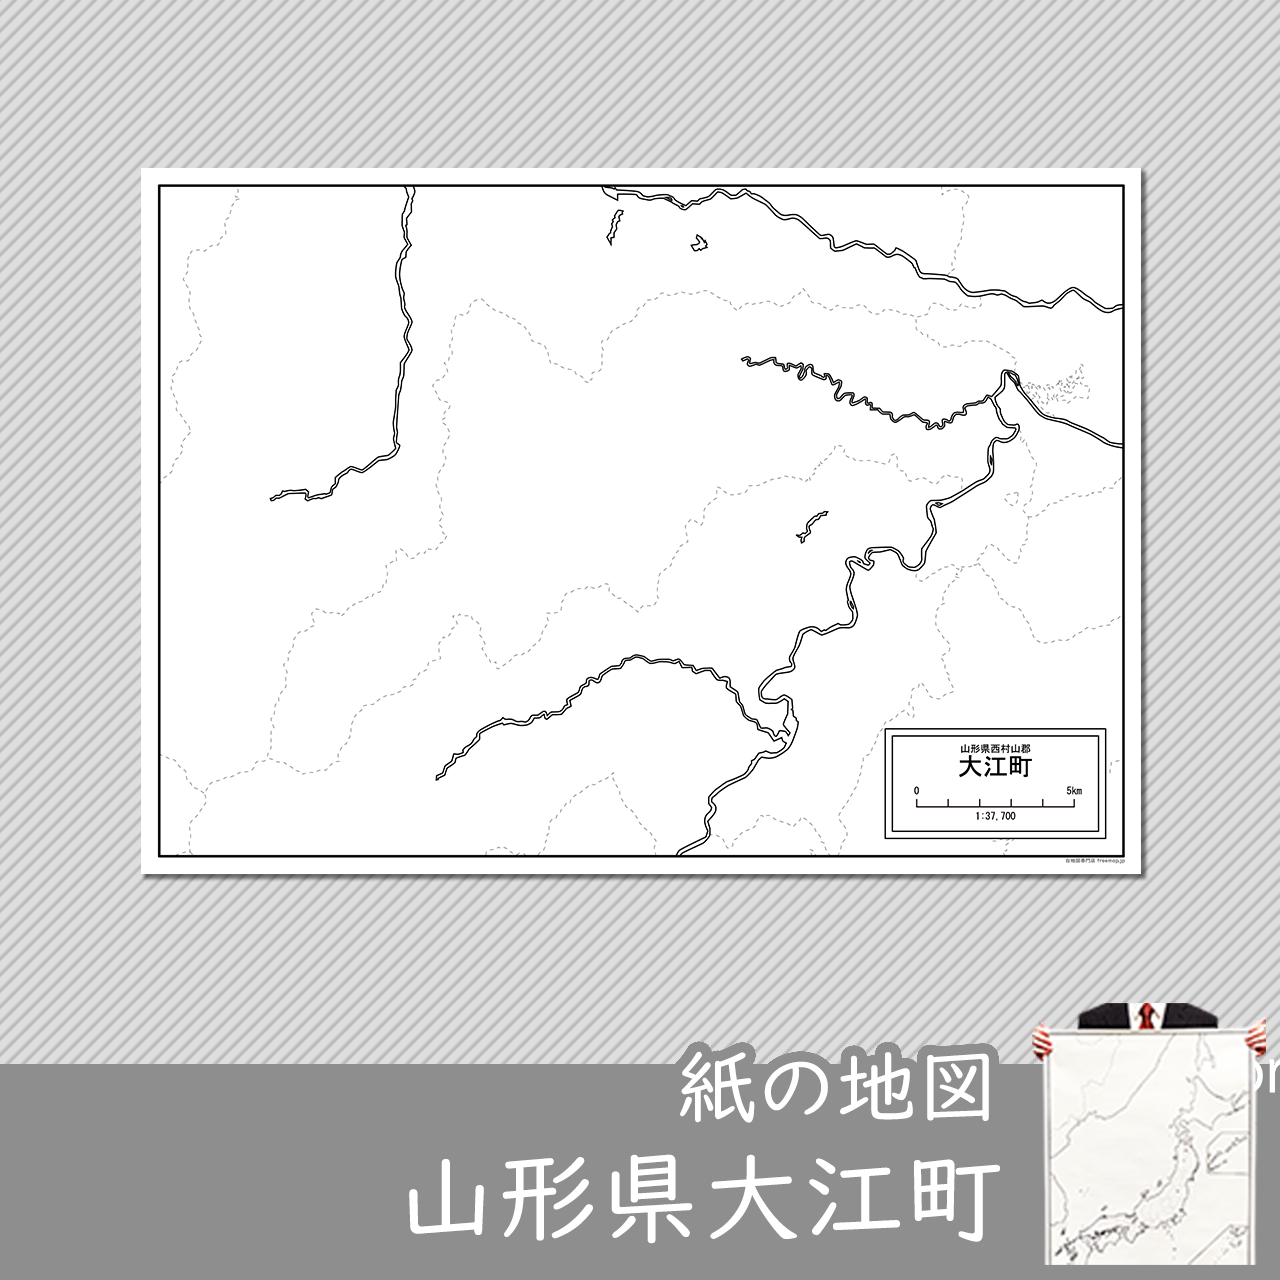 大江町の紙の白地図